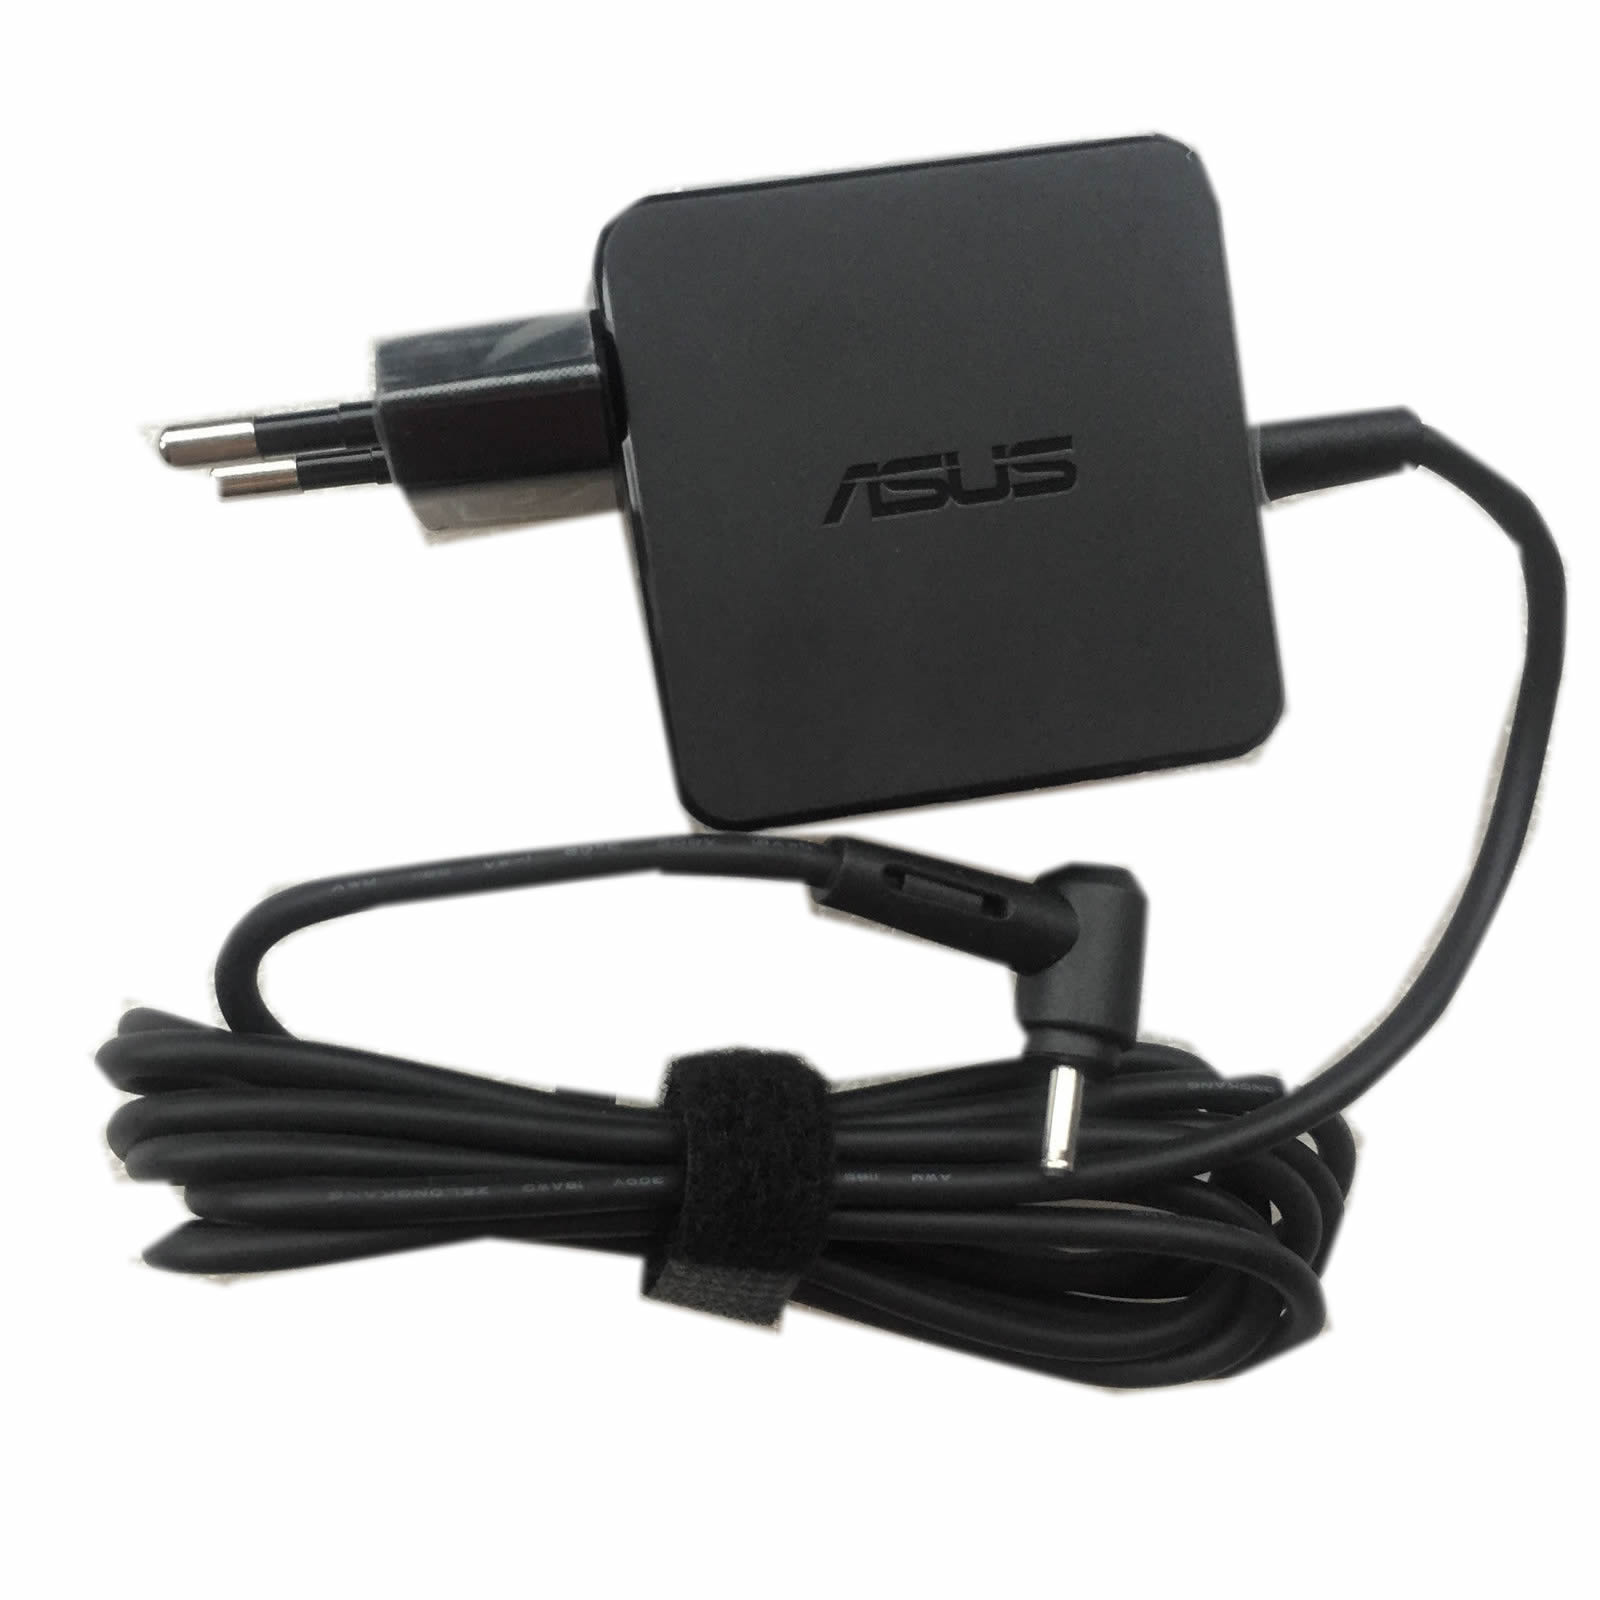 Asus AD890326,ADP-40TH A chargeur 19V 1.75A 33W alimentation originale pour Asus X551M X551MA séries